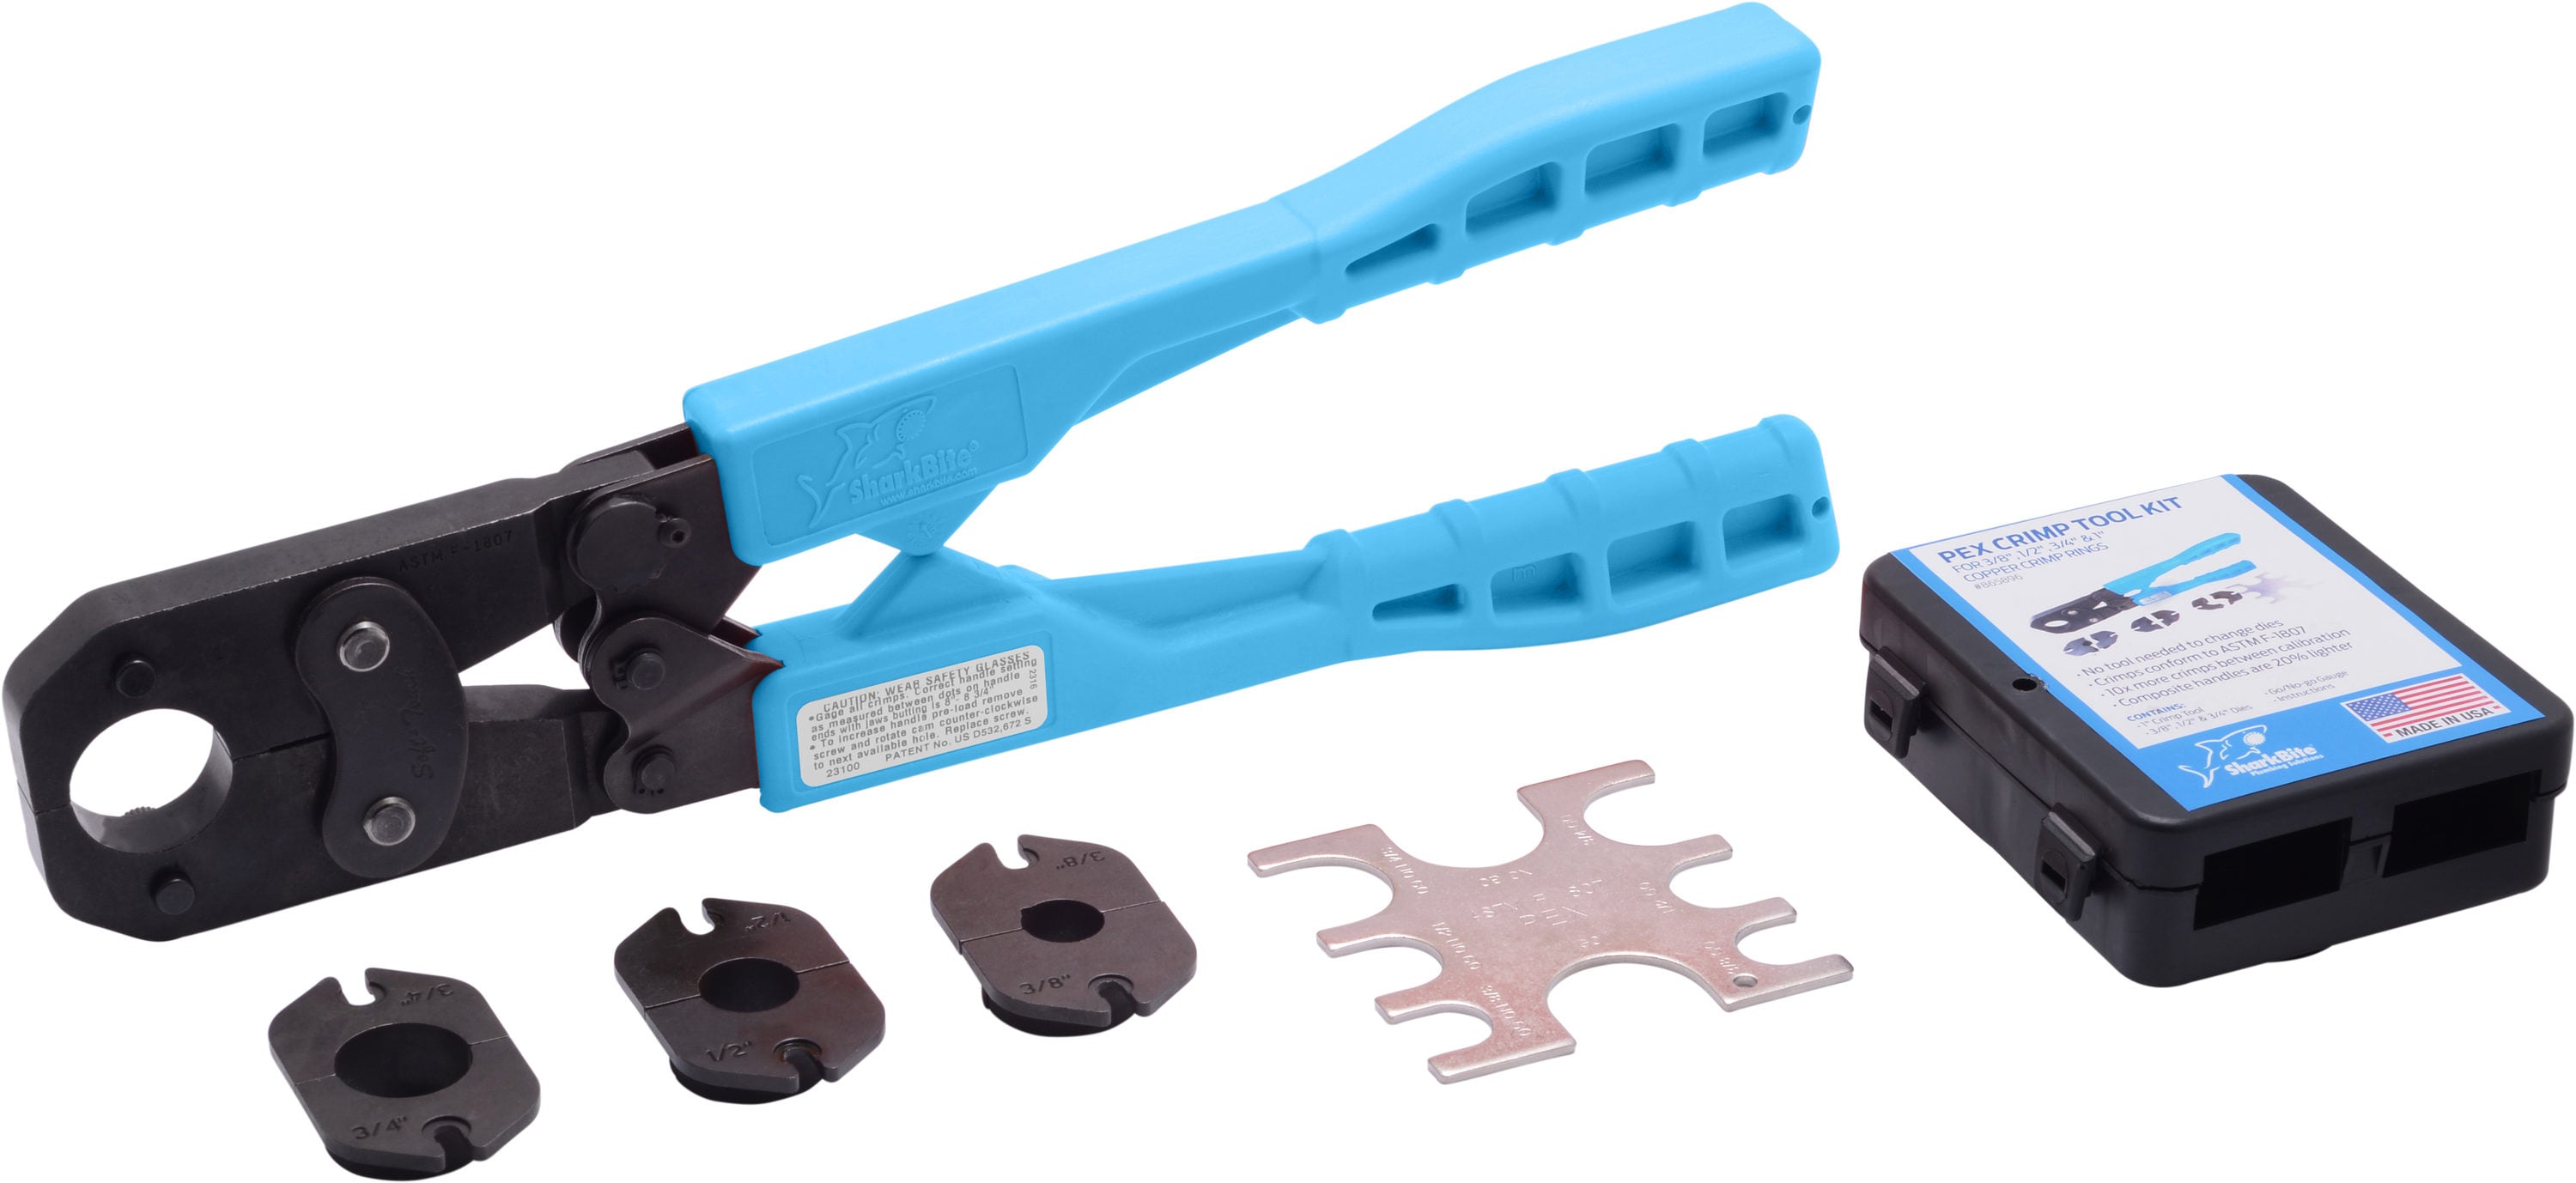 PEX Crimp Crimper Tool Kit with Decrimper for sizes 3/8" 5/8" & 3/4" 1/2" 